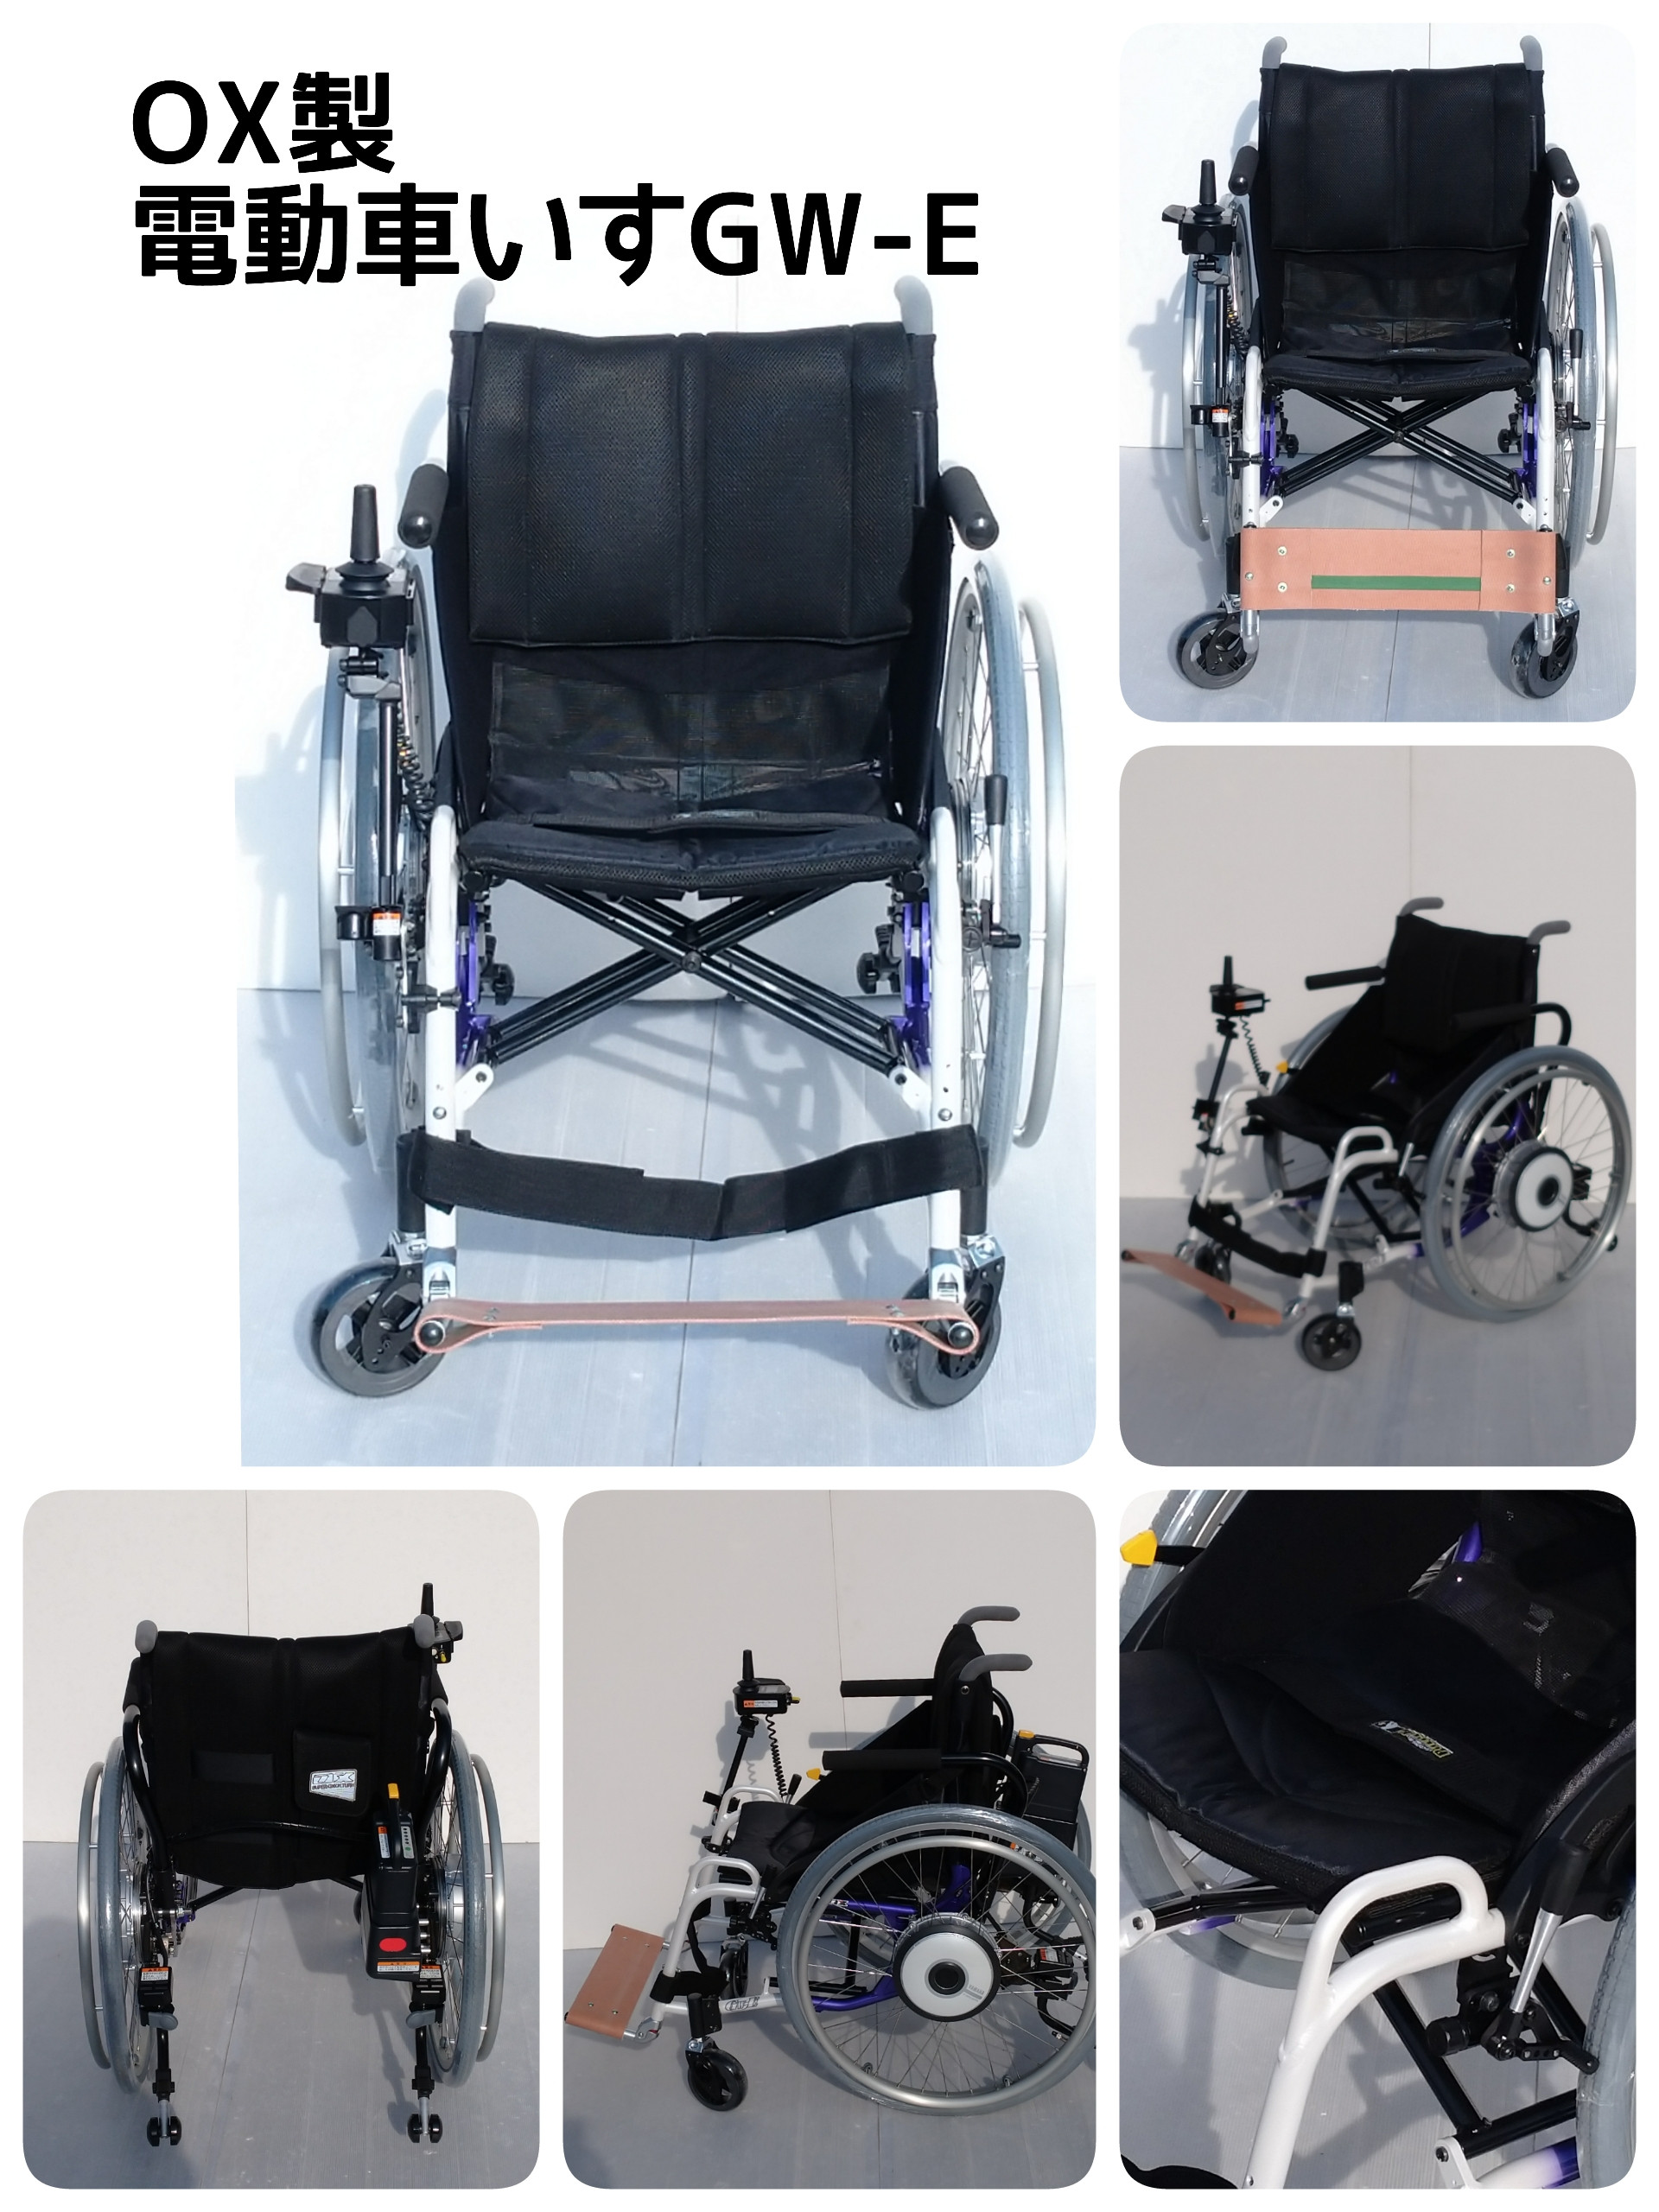 OX製電動車椅子を納入しました